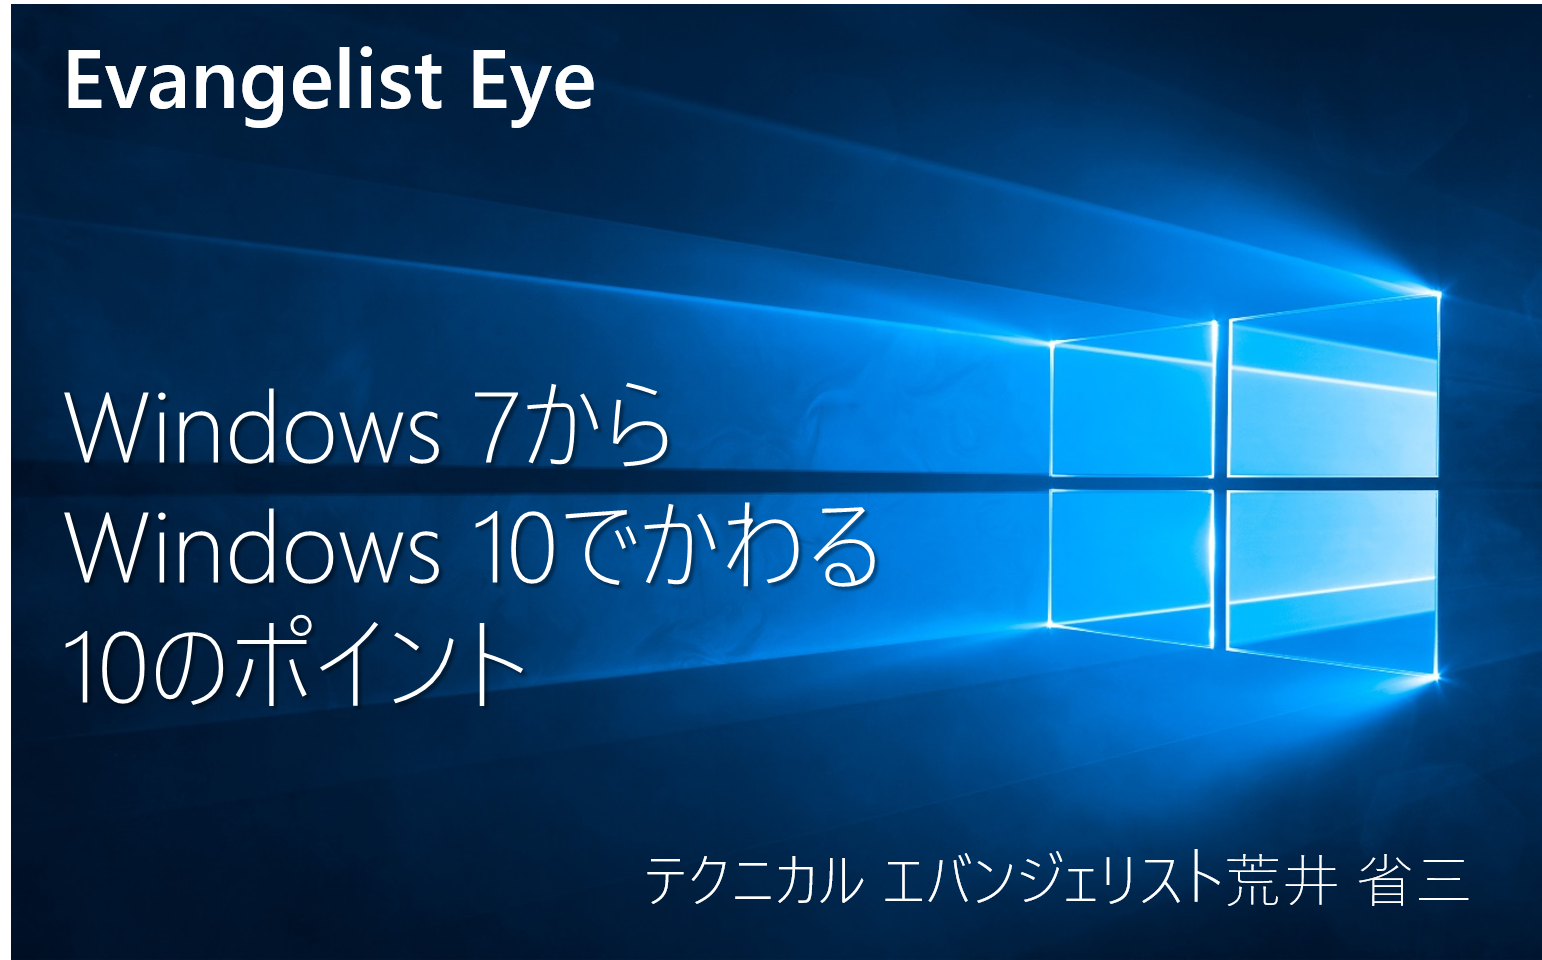 Windows 7 から Windows 10 で変わる 10 のポイント - Windows Blog 